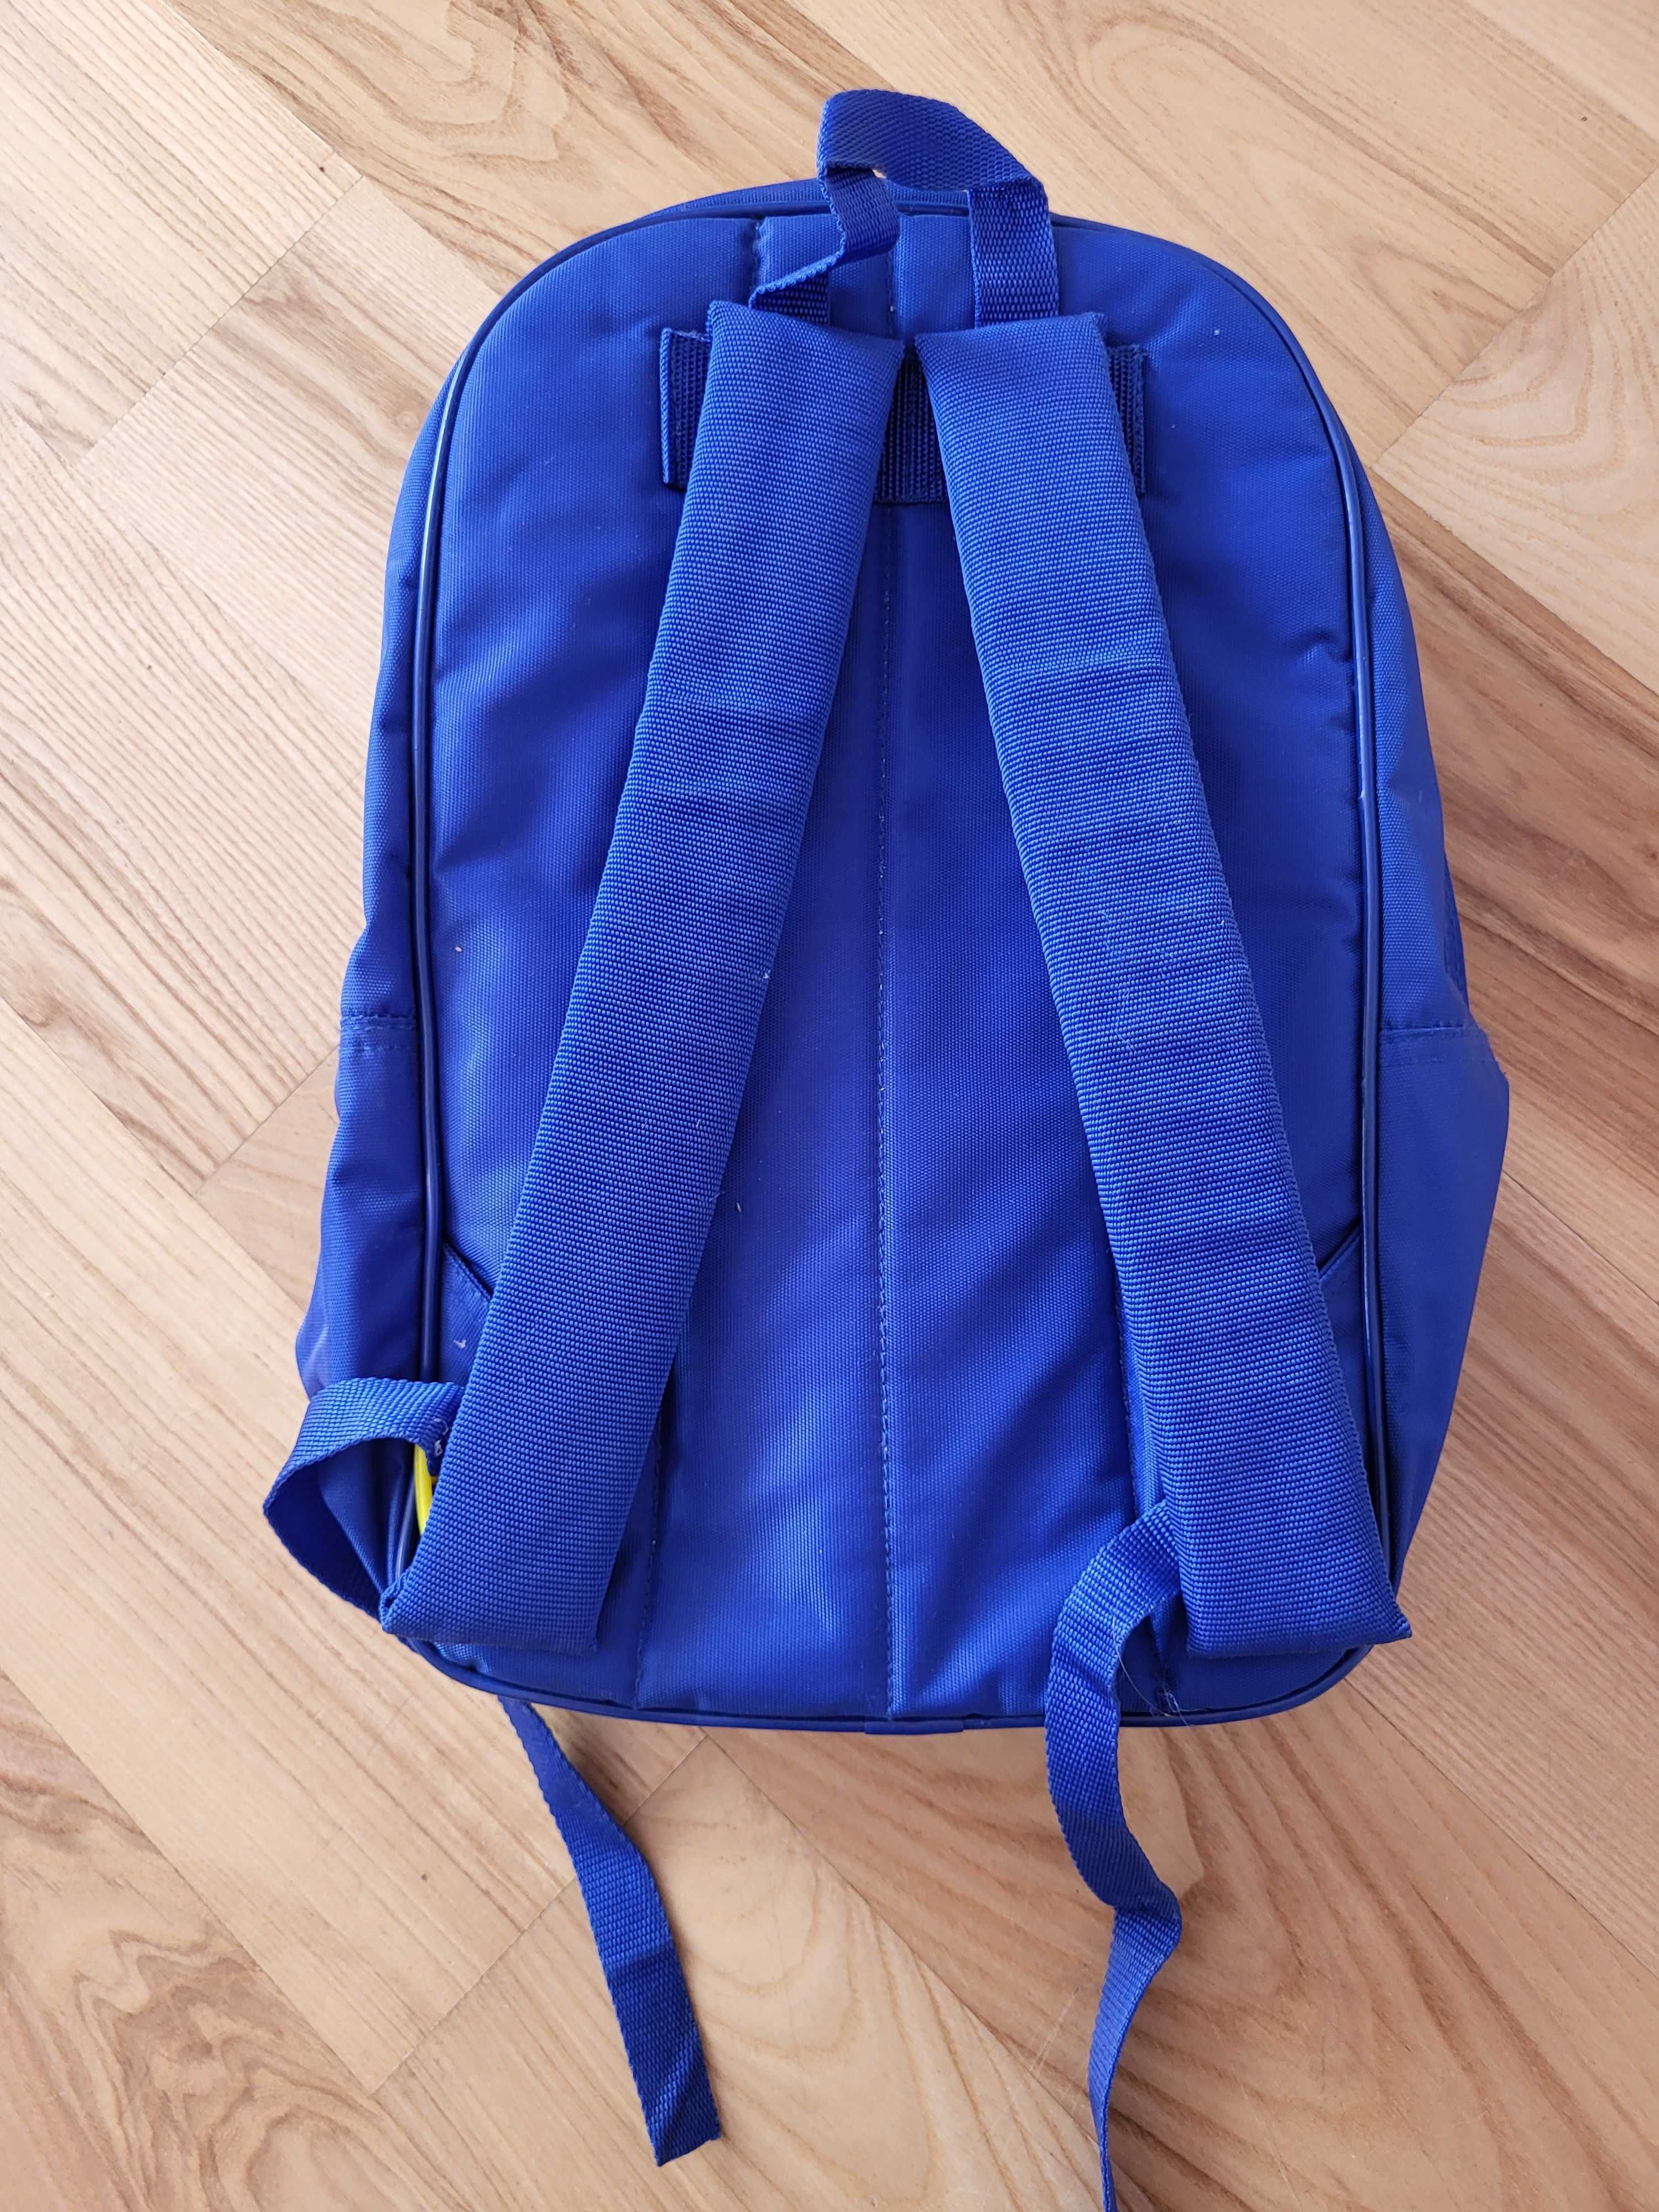 Plecak dla przedszkolaka niebieski